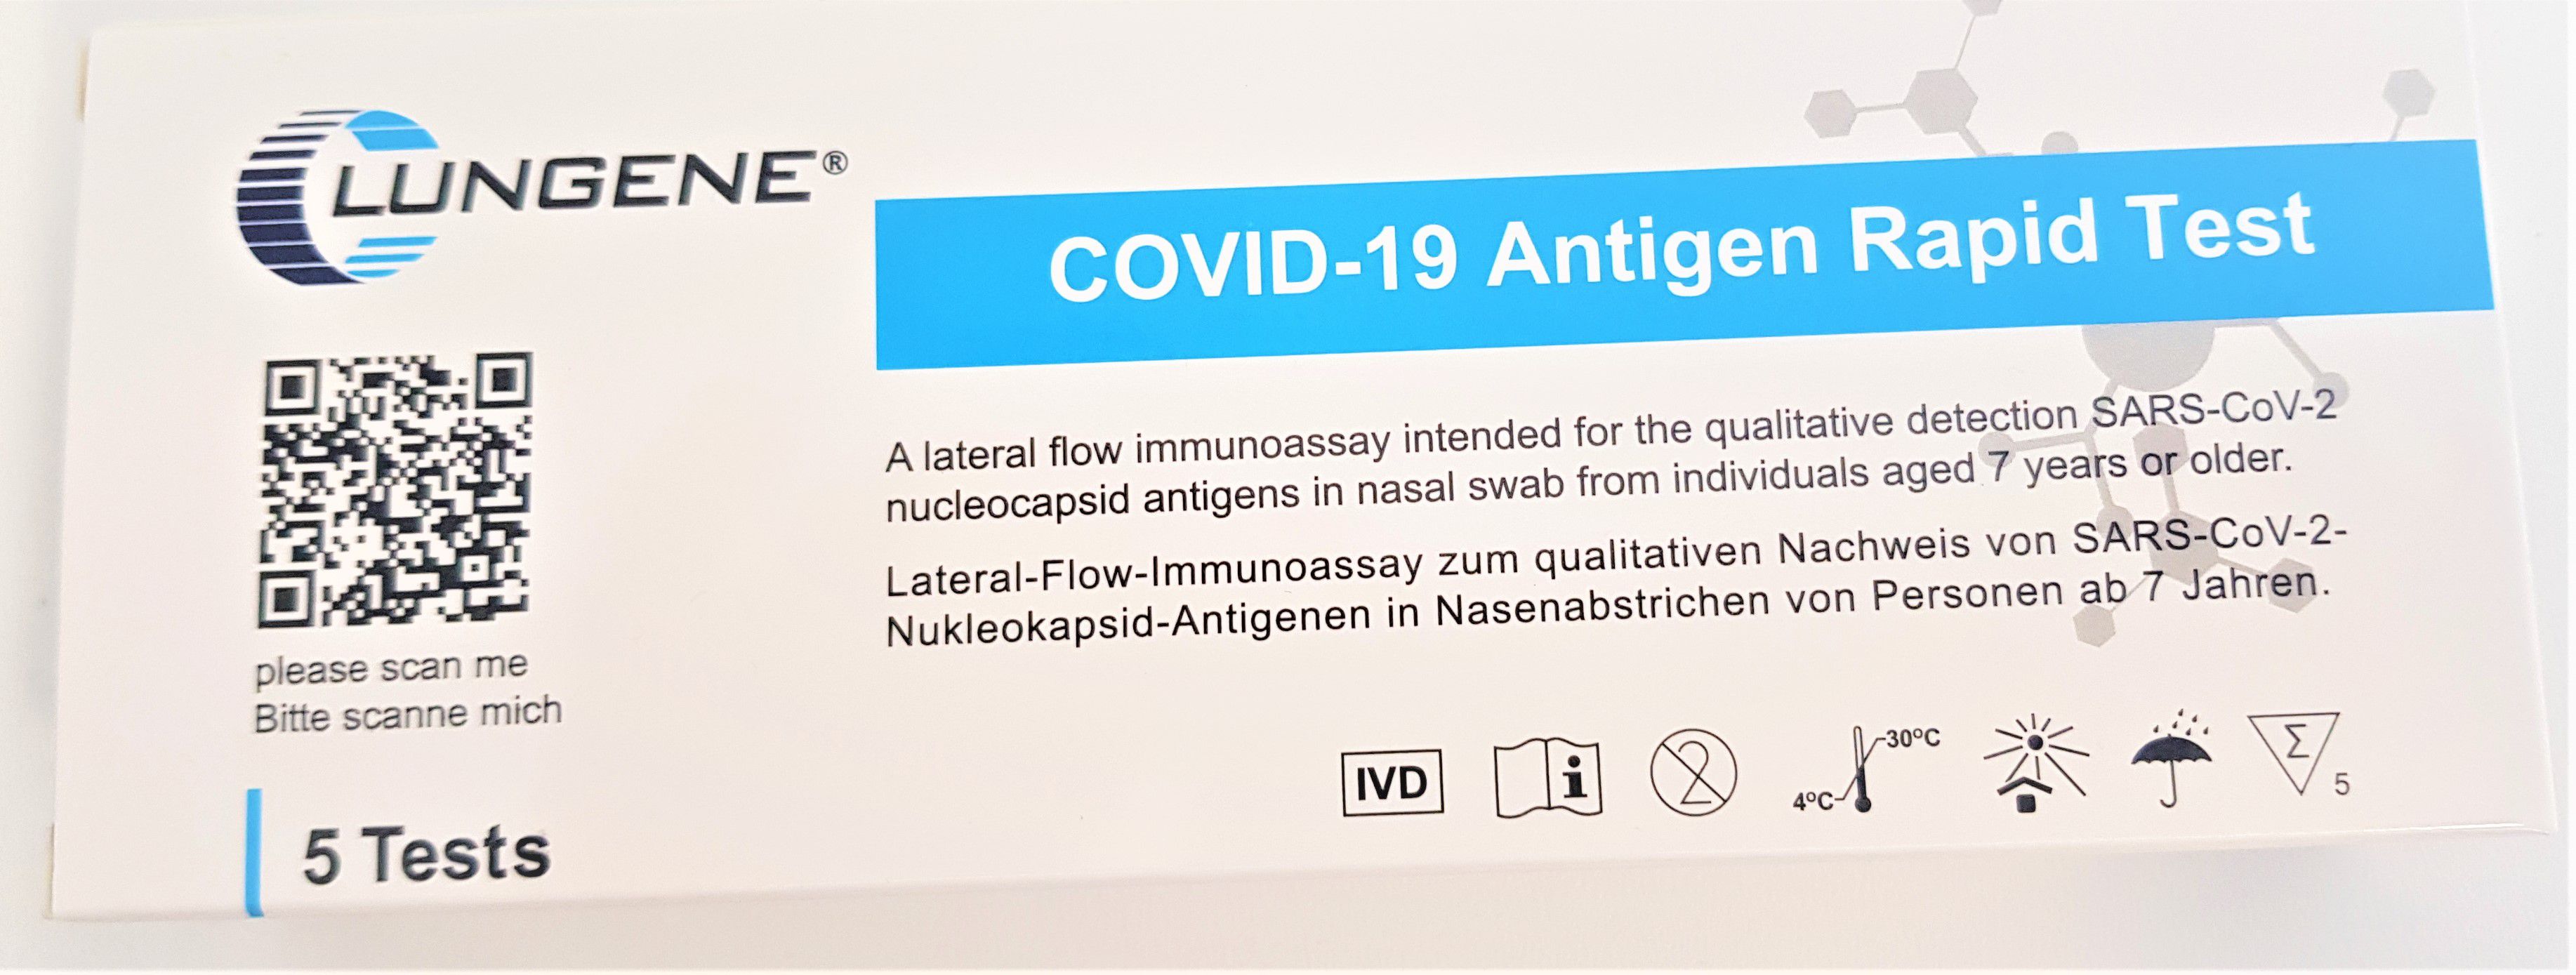 CLUNGENE COVID-19 Antigen Rapid Test Cassette für Nase-Rachen Abstrich